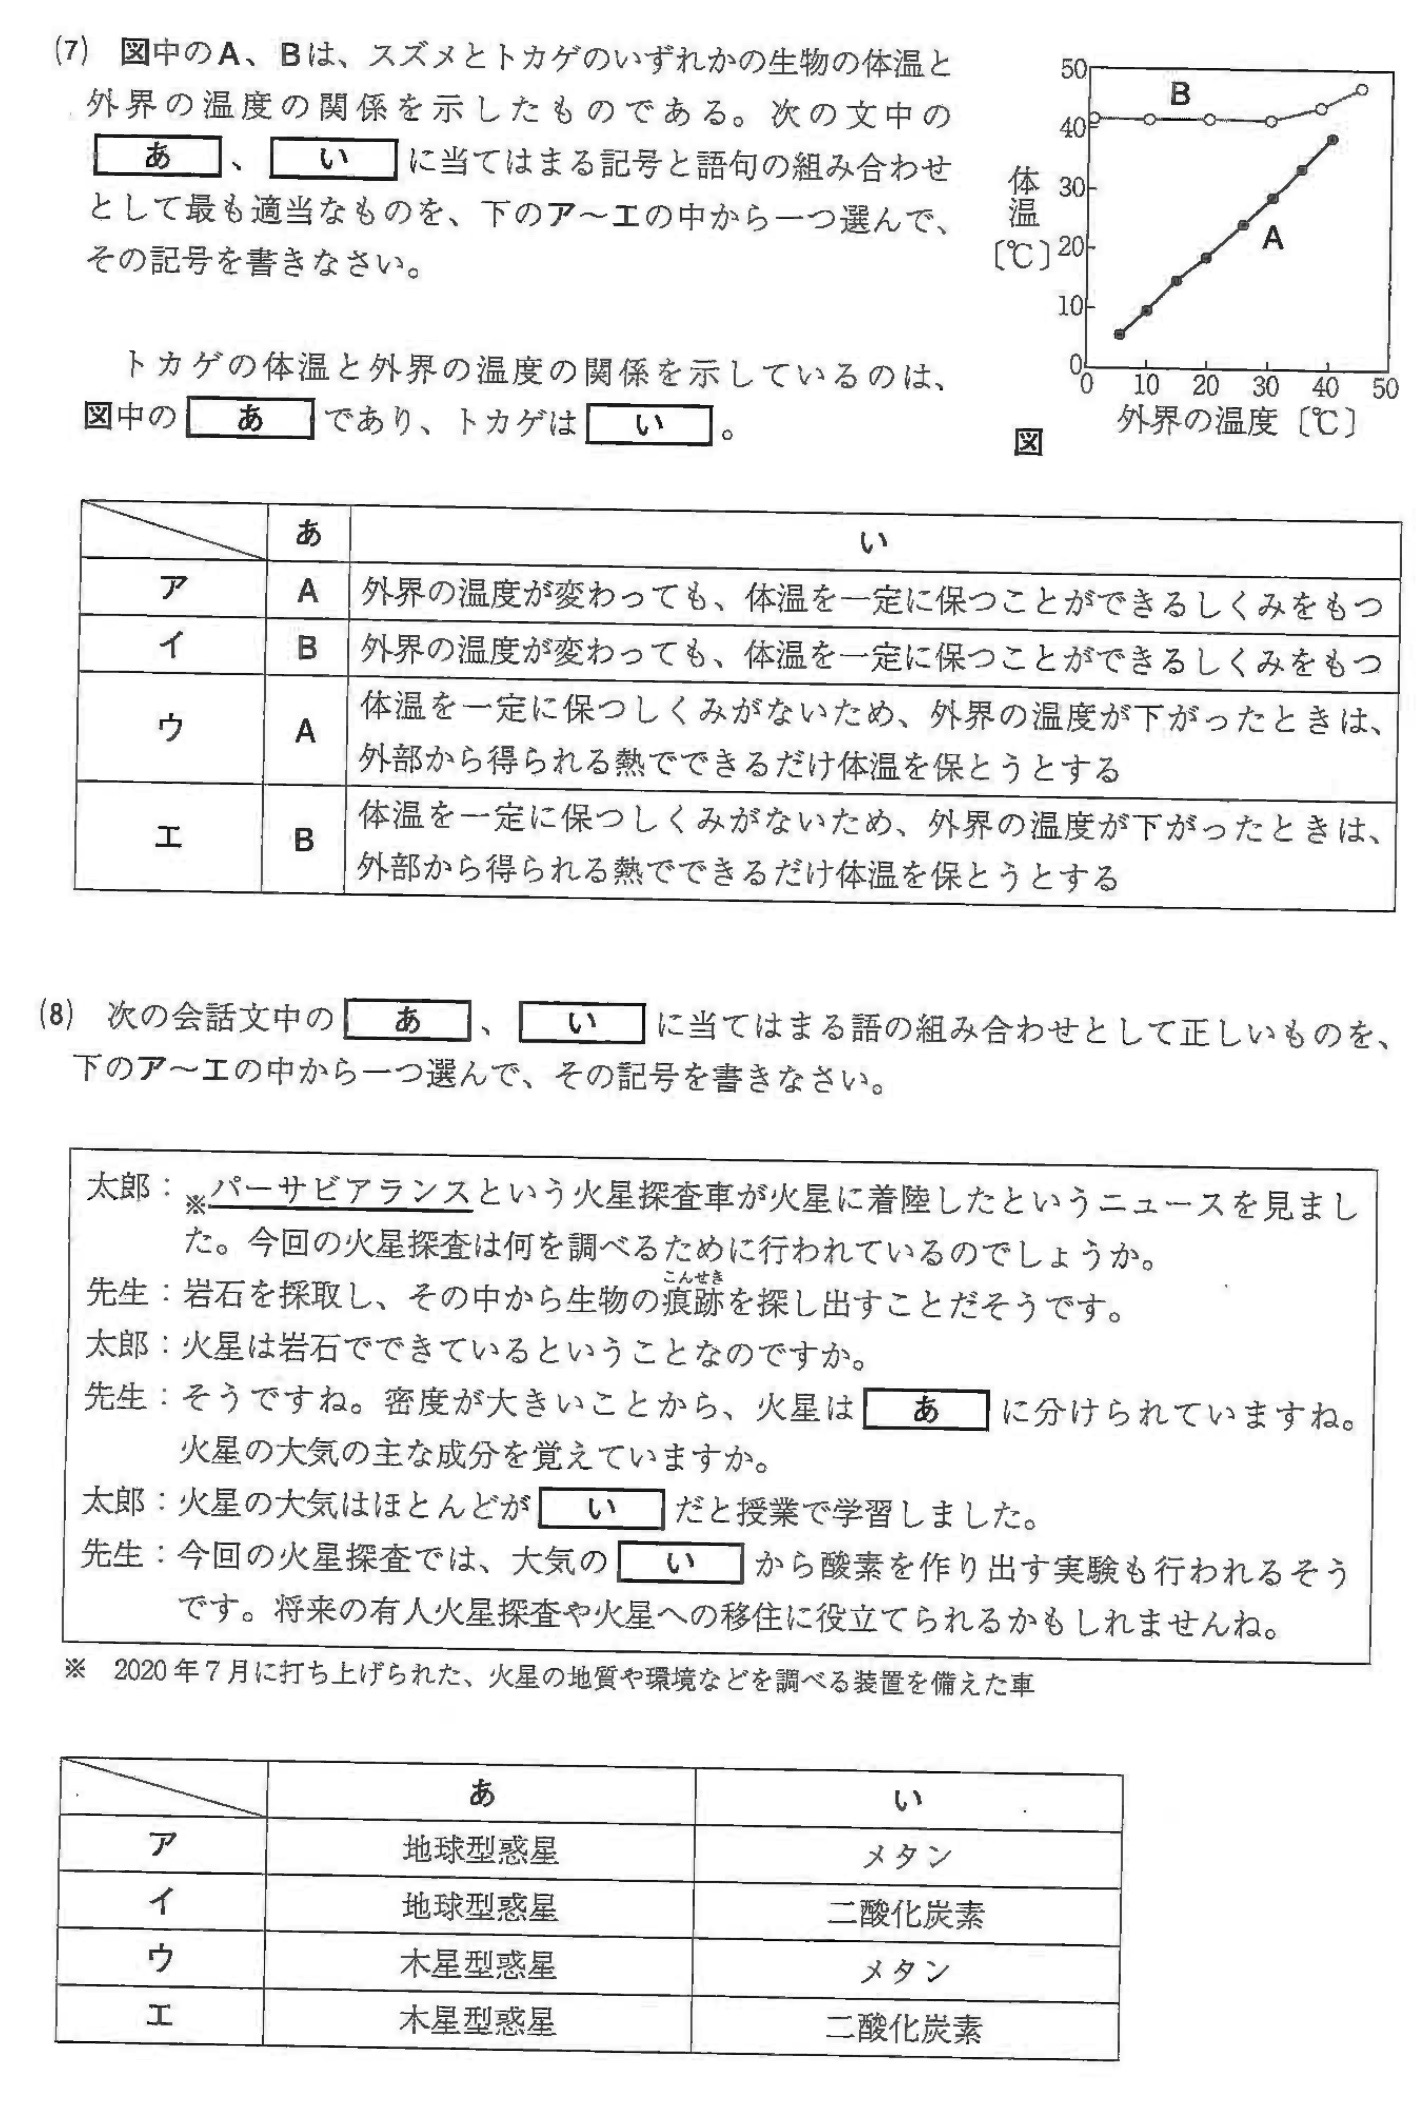 茨城県公立高校入試理科2022年(令和4年)過去問題